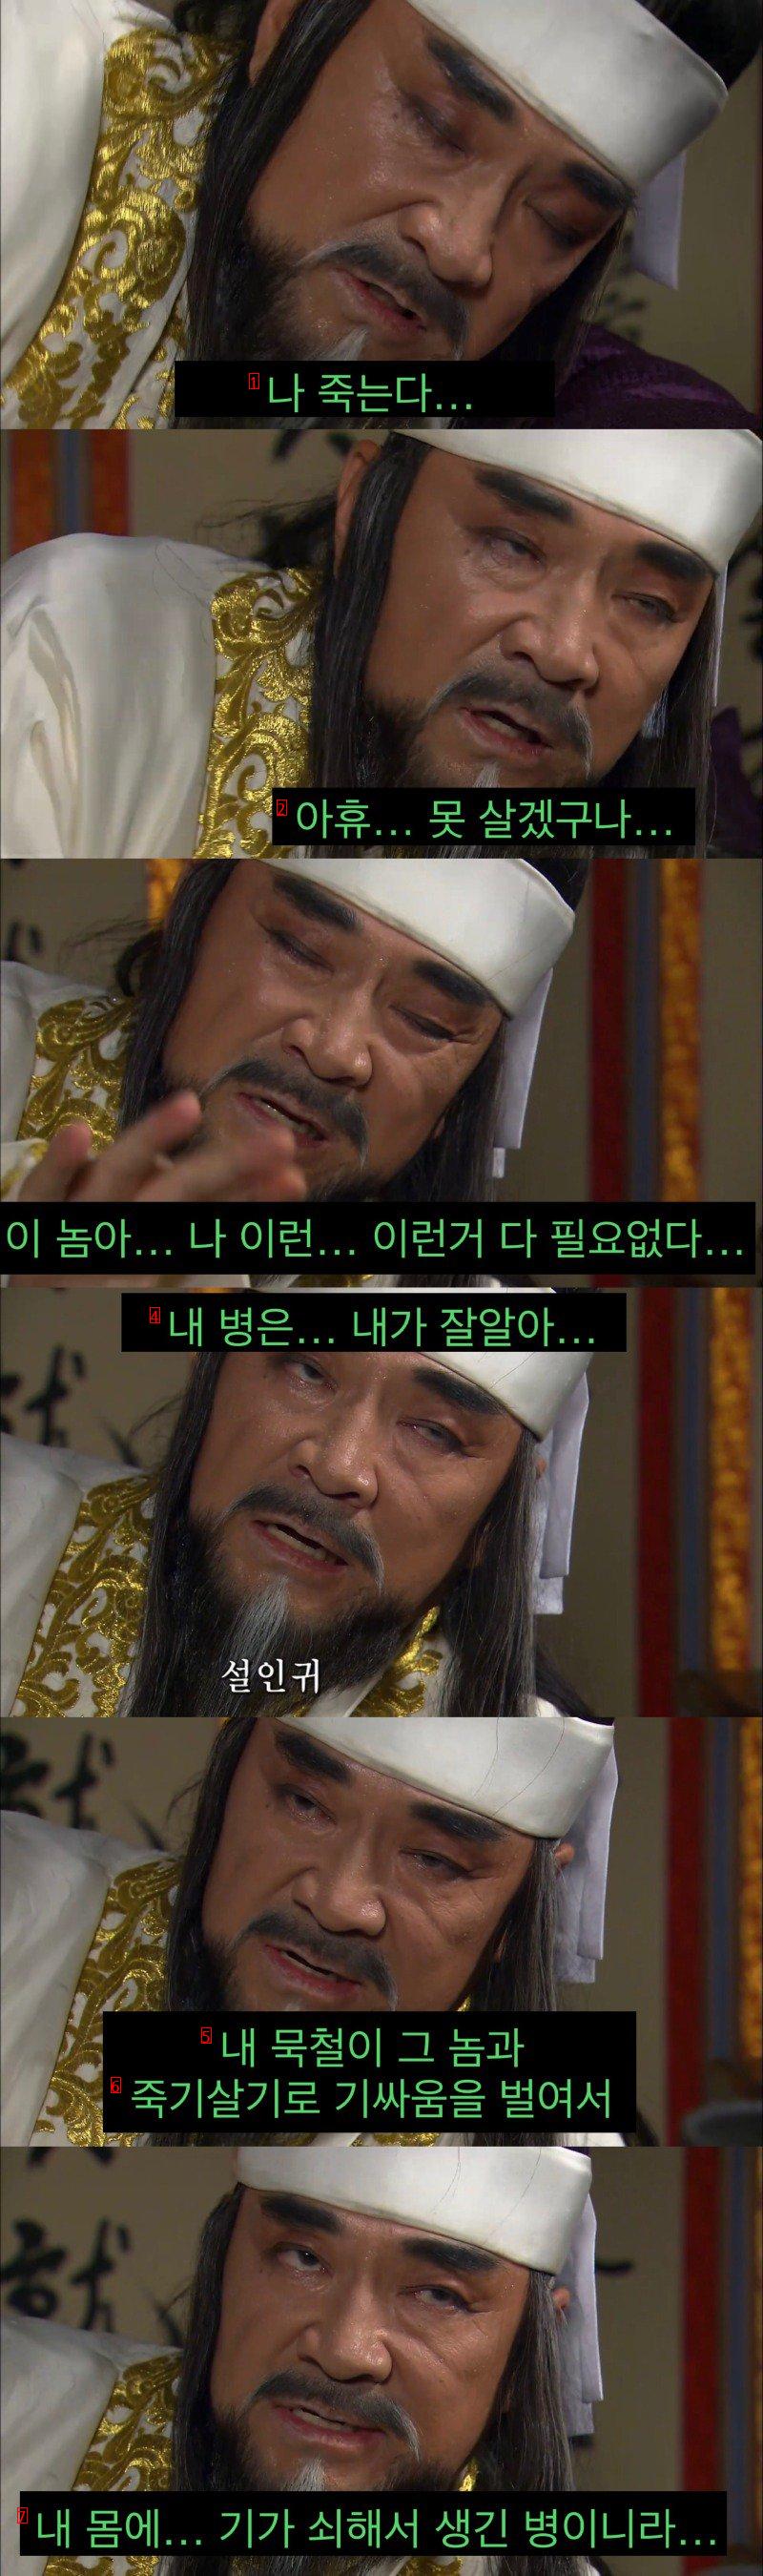 한국 사극 역사상 최고의(?) 충신.jpg